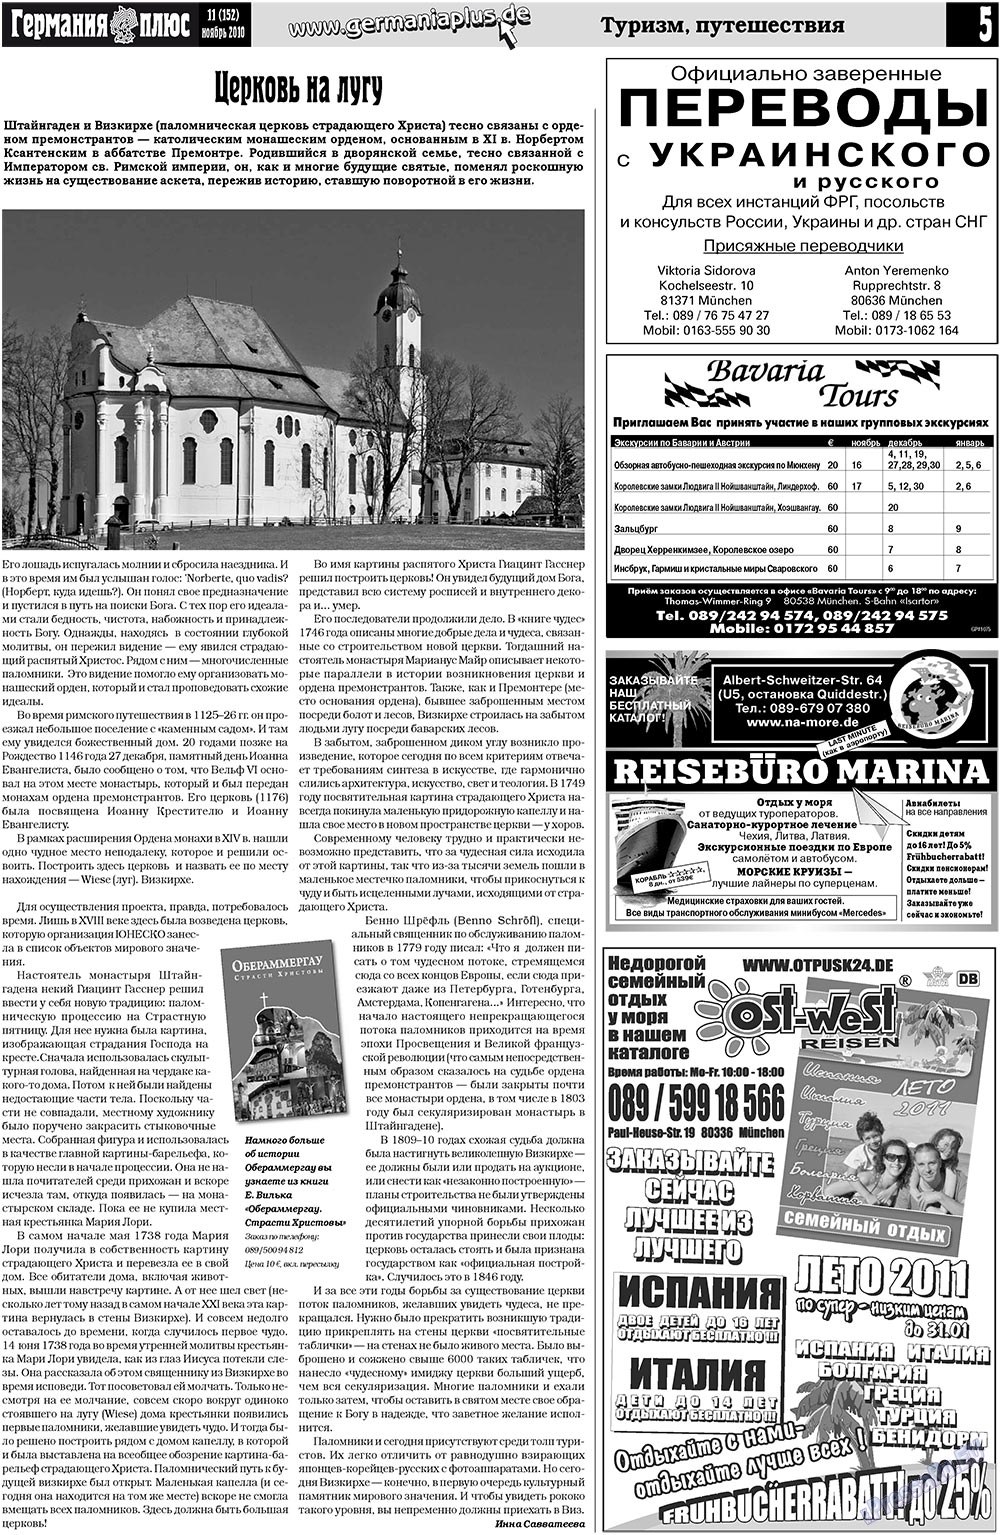 Германия плюс (газета). 2010 год, номер 11, стр. 5